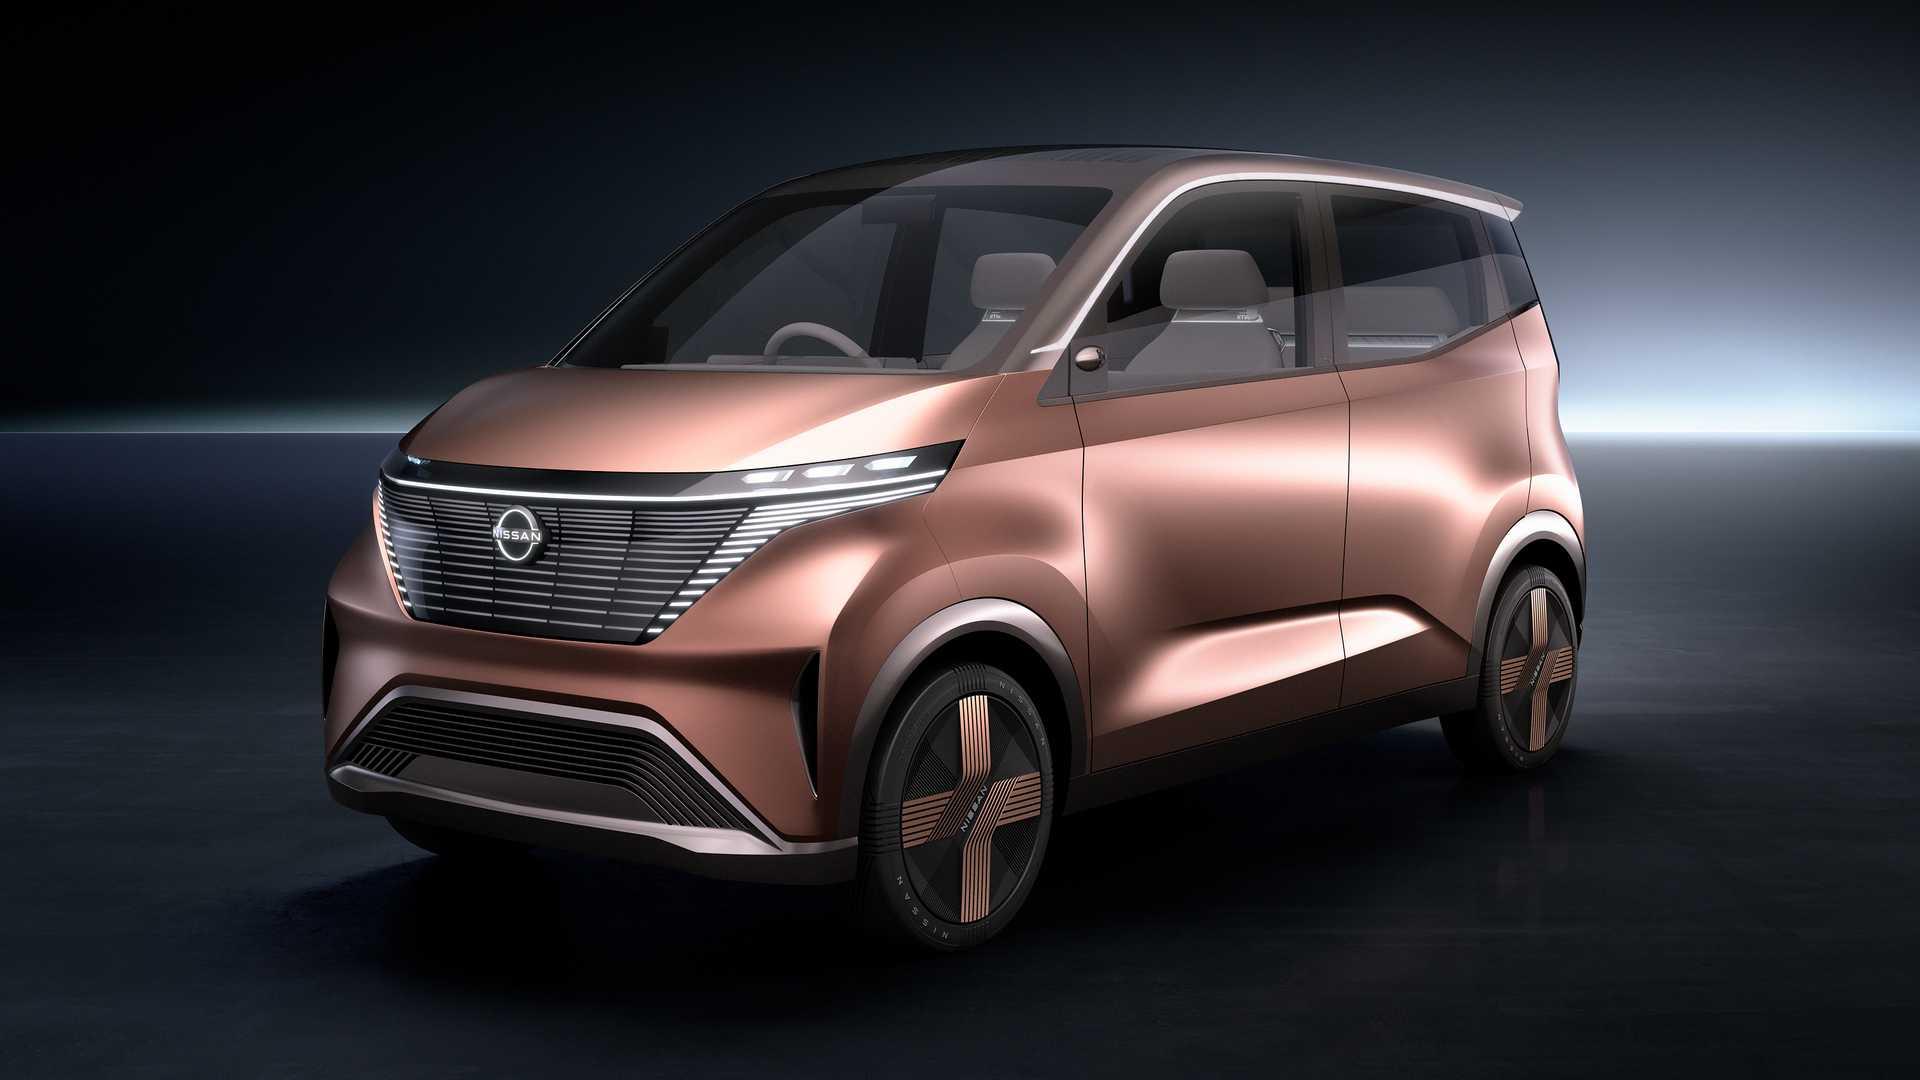 เล็กแต่หรู! Nissan IMk Concept รถยนต์ไฟฟ้าต้นแบบเตรียมเปิดตัวที่ญี่ปุ่นเร็ววันนี้